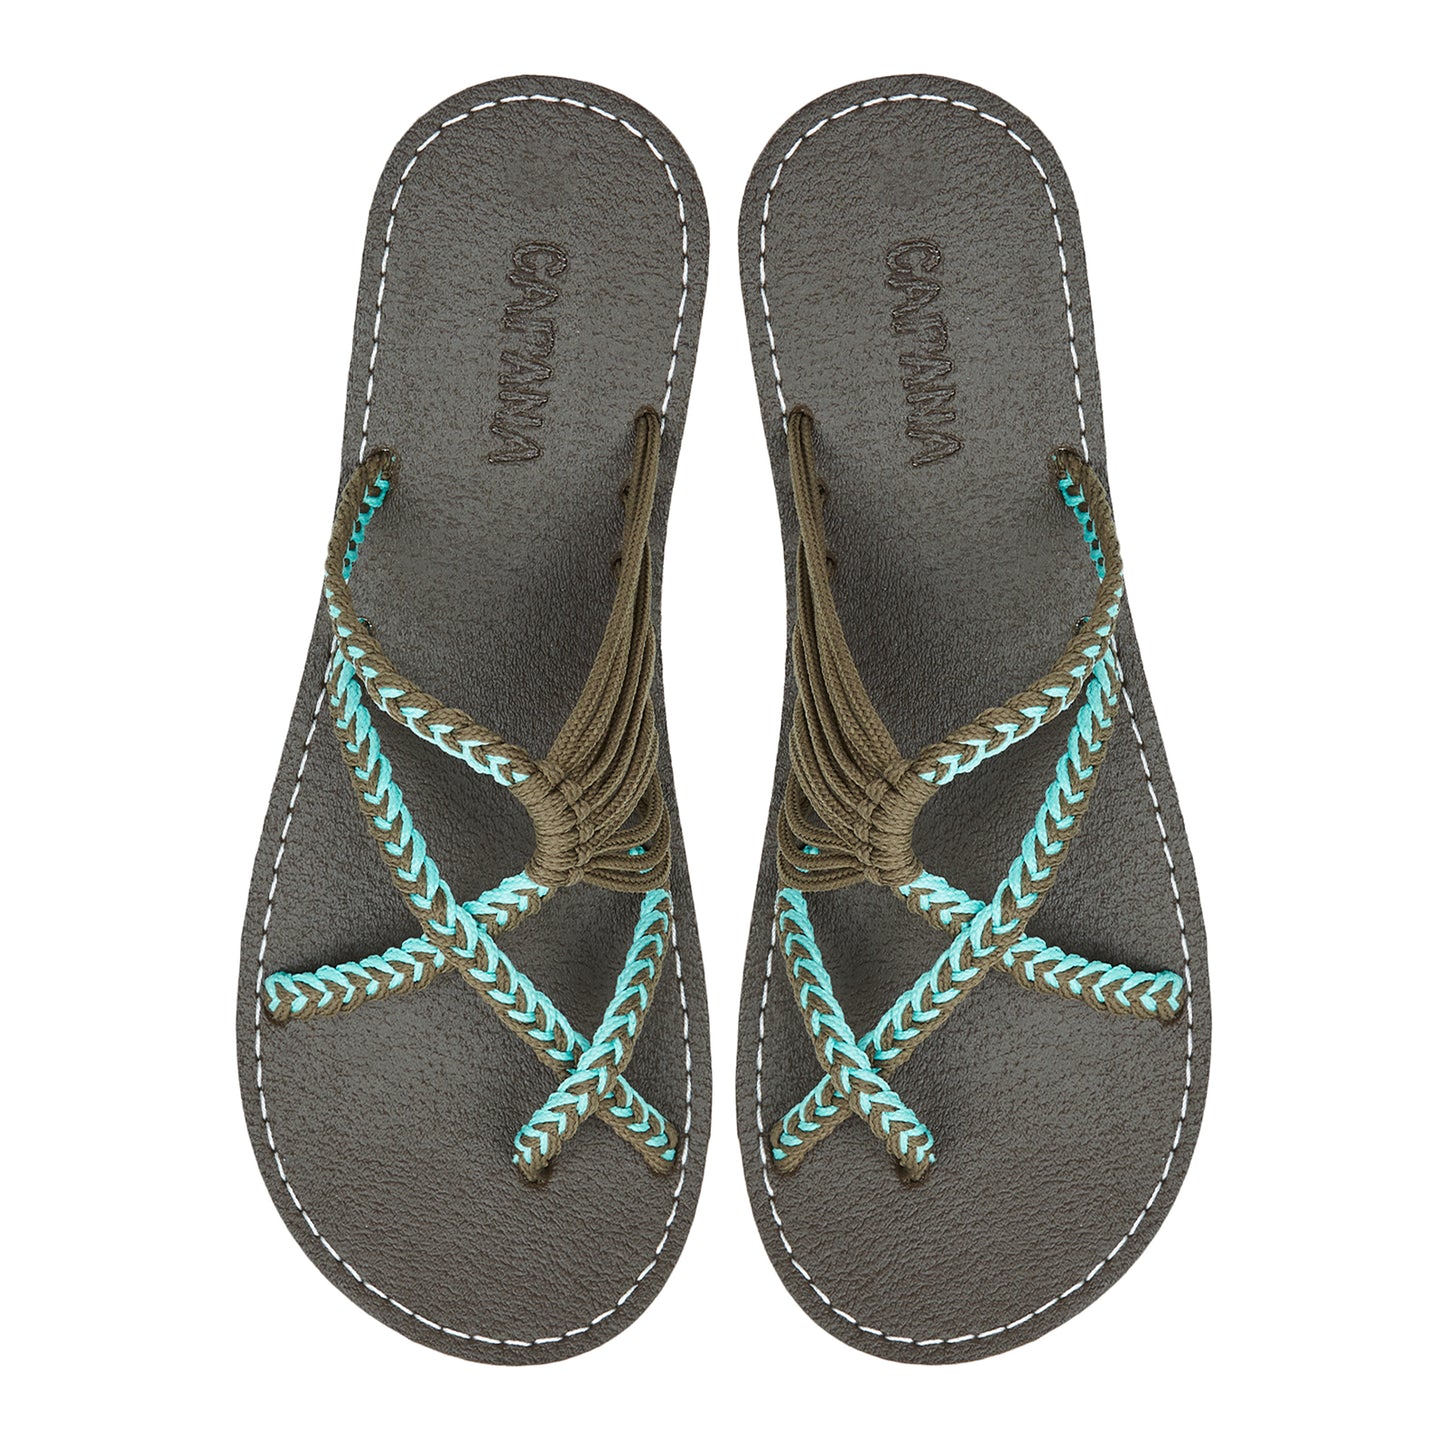 Oceanbliss Turquoise Gray Rope Sandals Teal Gray Crisscross design Flat Handmade sandals for women